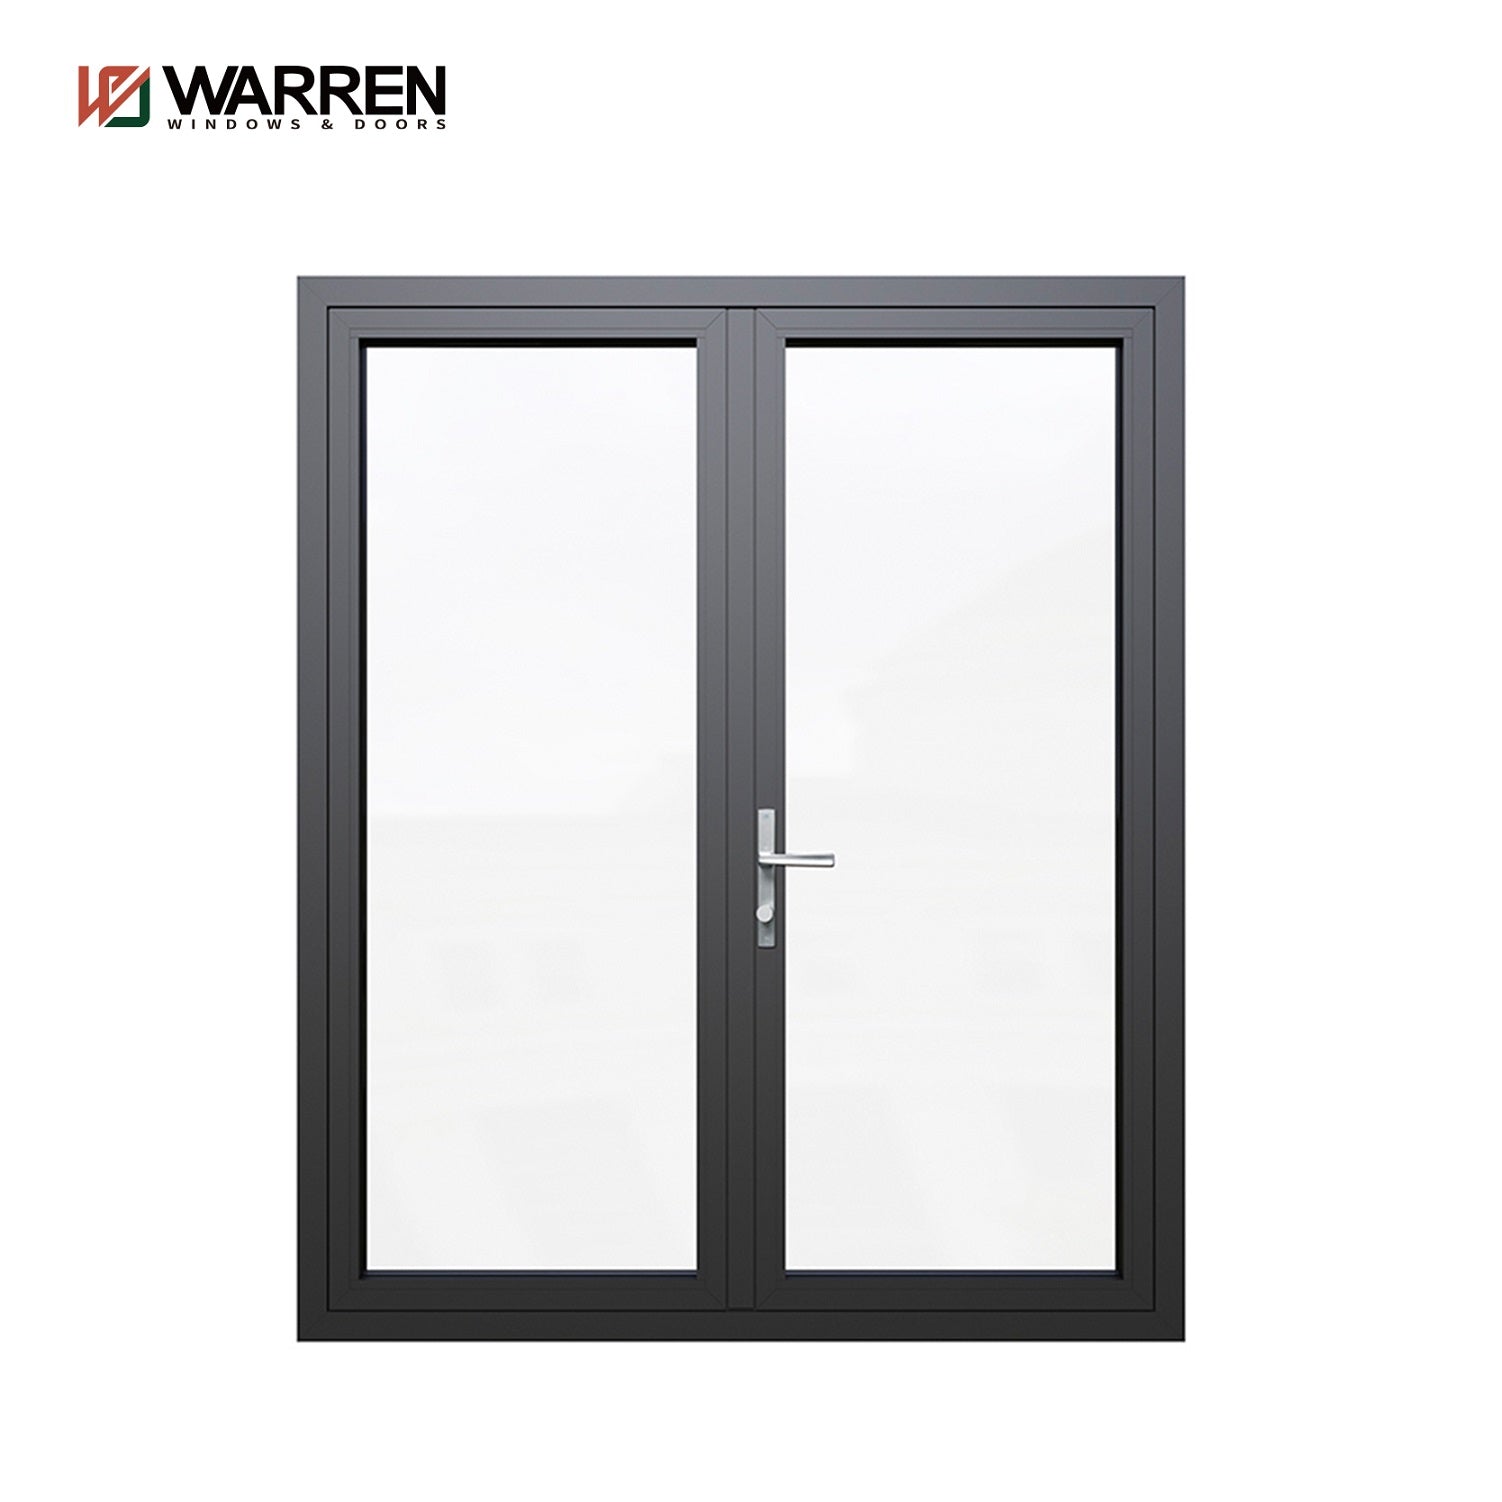 Warren Factory Direct Supplier Aluminum Casement Door Aluminum Door Hinge Suitable For Residential Offices